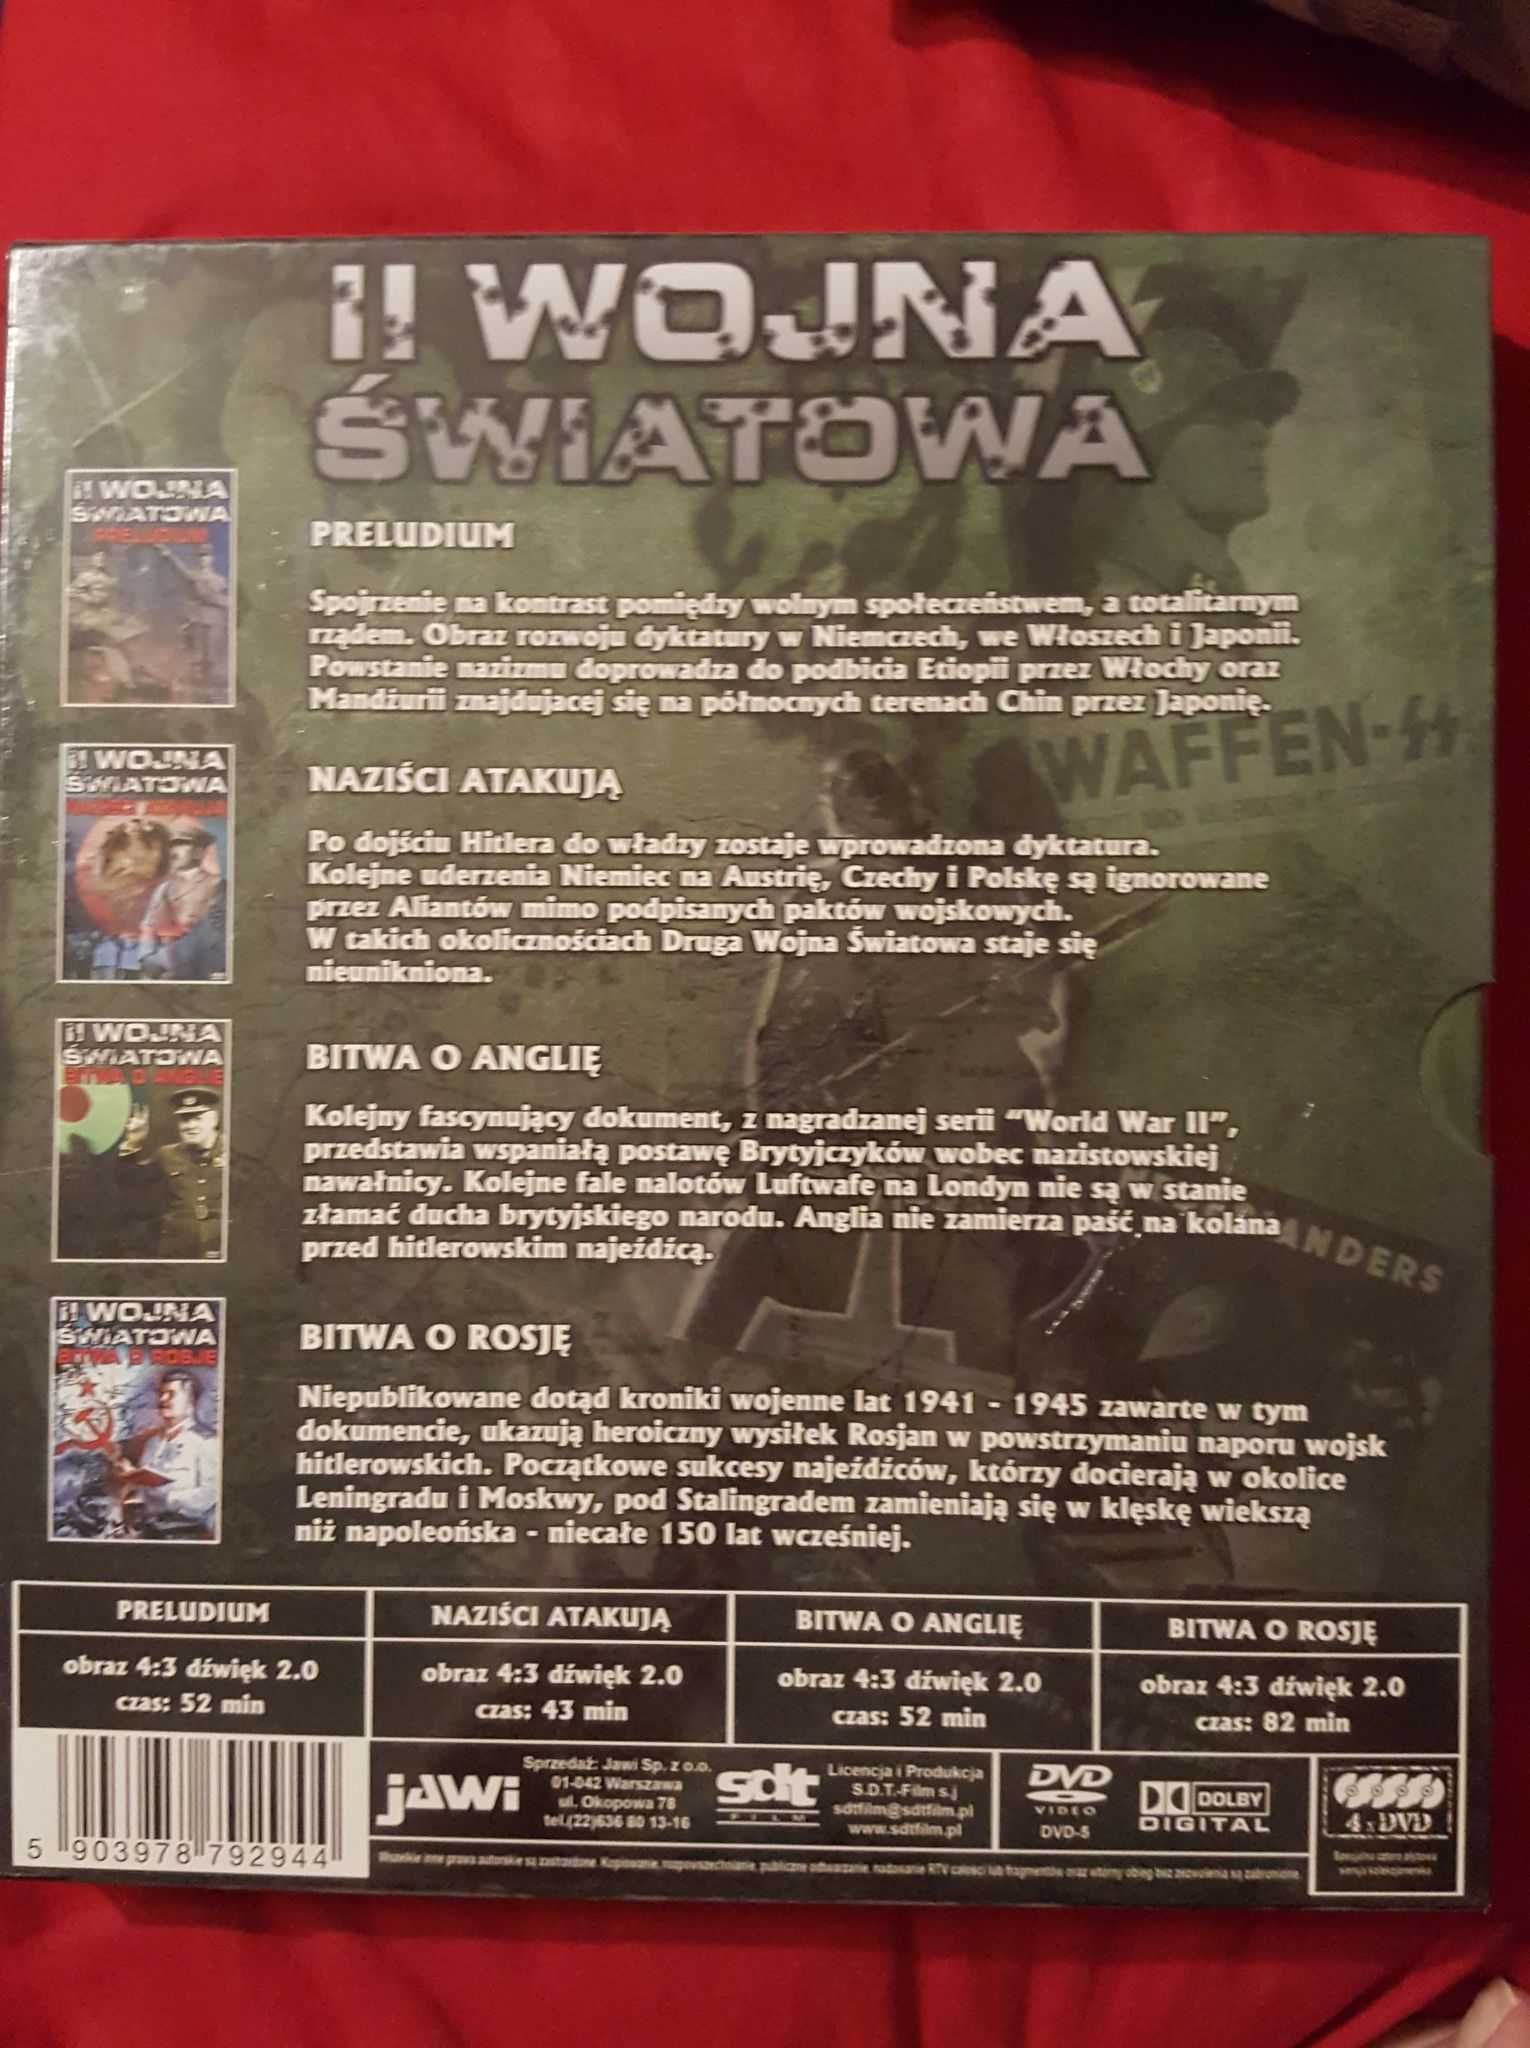 II Wojna Światowa BOX 4DVD
Film II Wojna Światowa płyta DVD